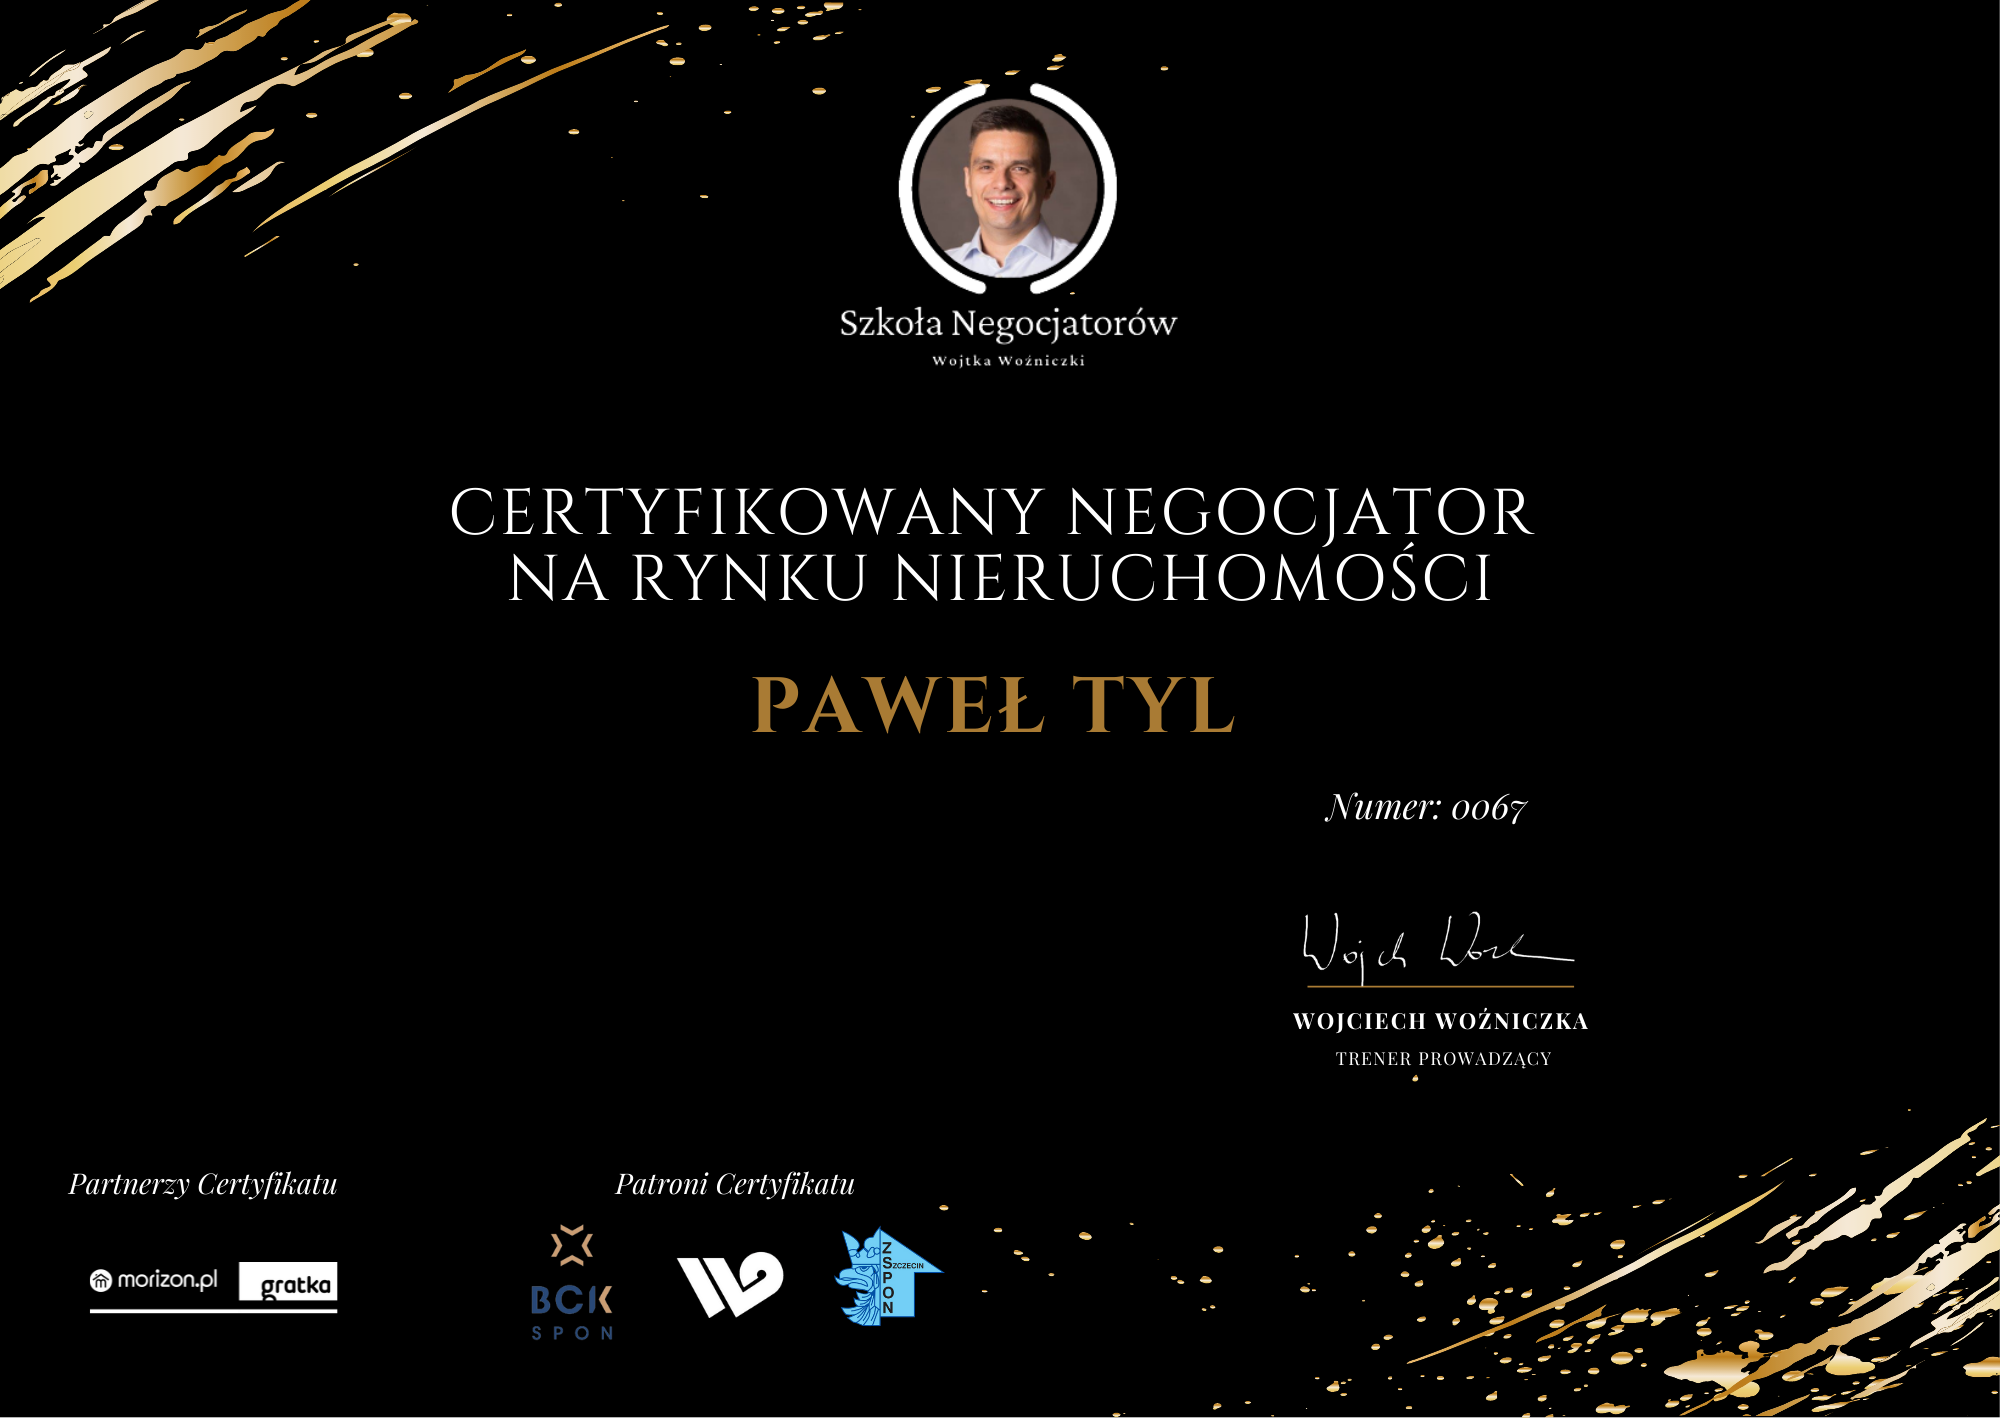 Paweł Tyl - certyfikowany negocjator na rynku nieruchomości